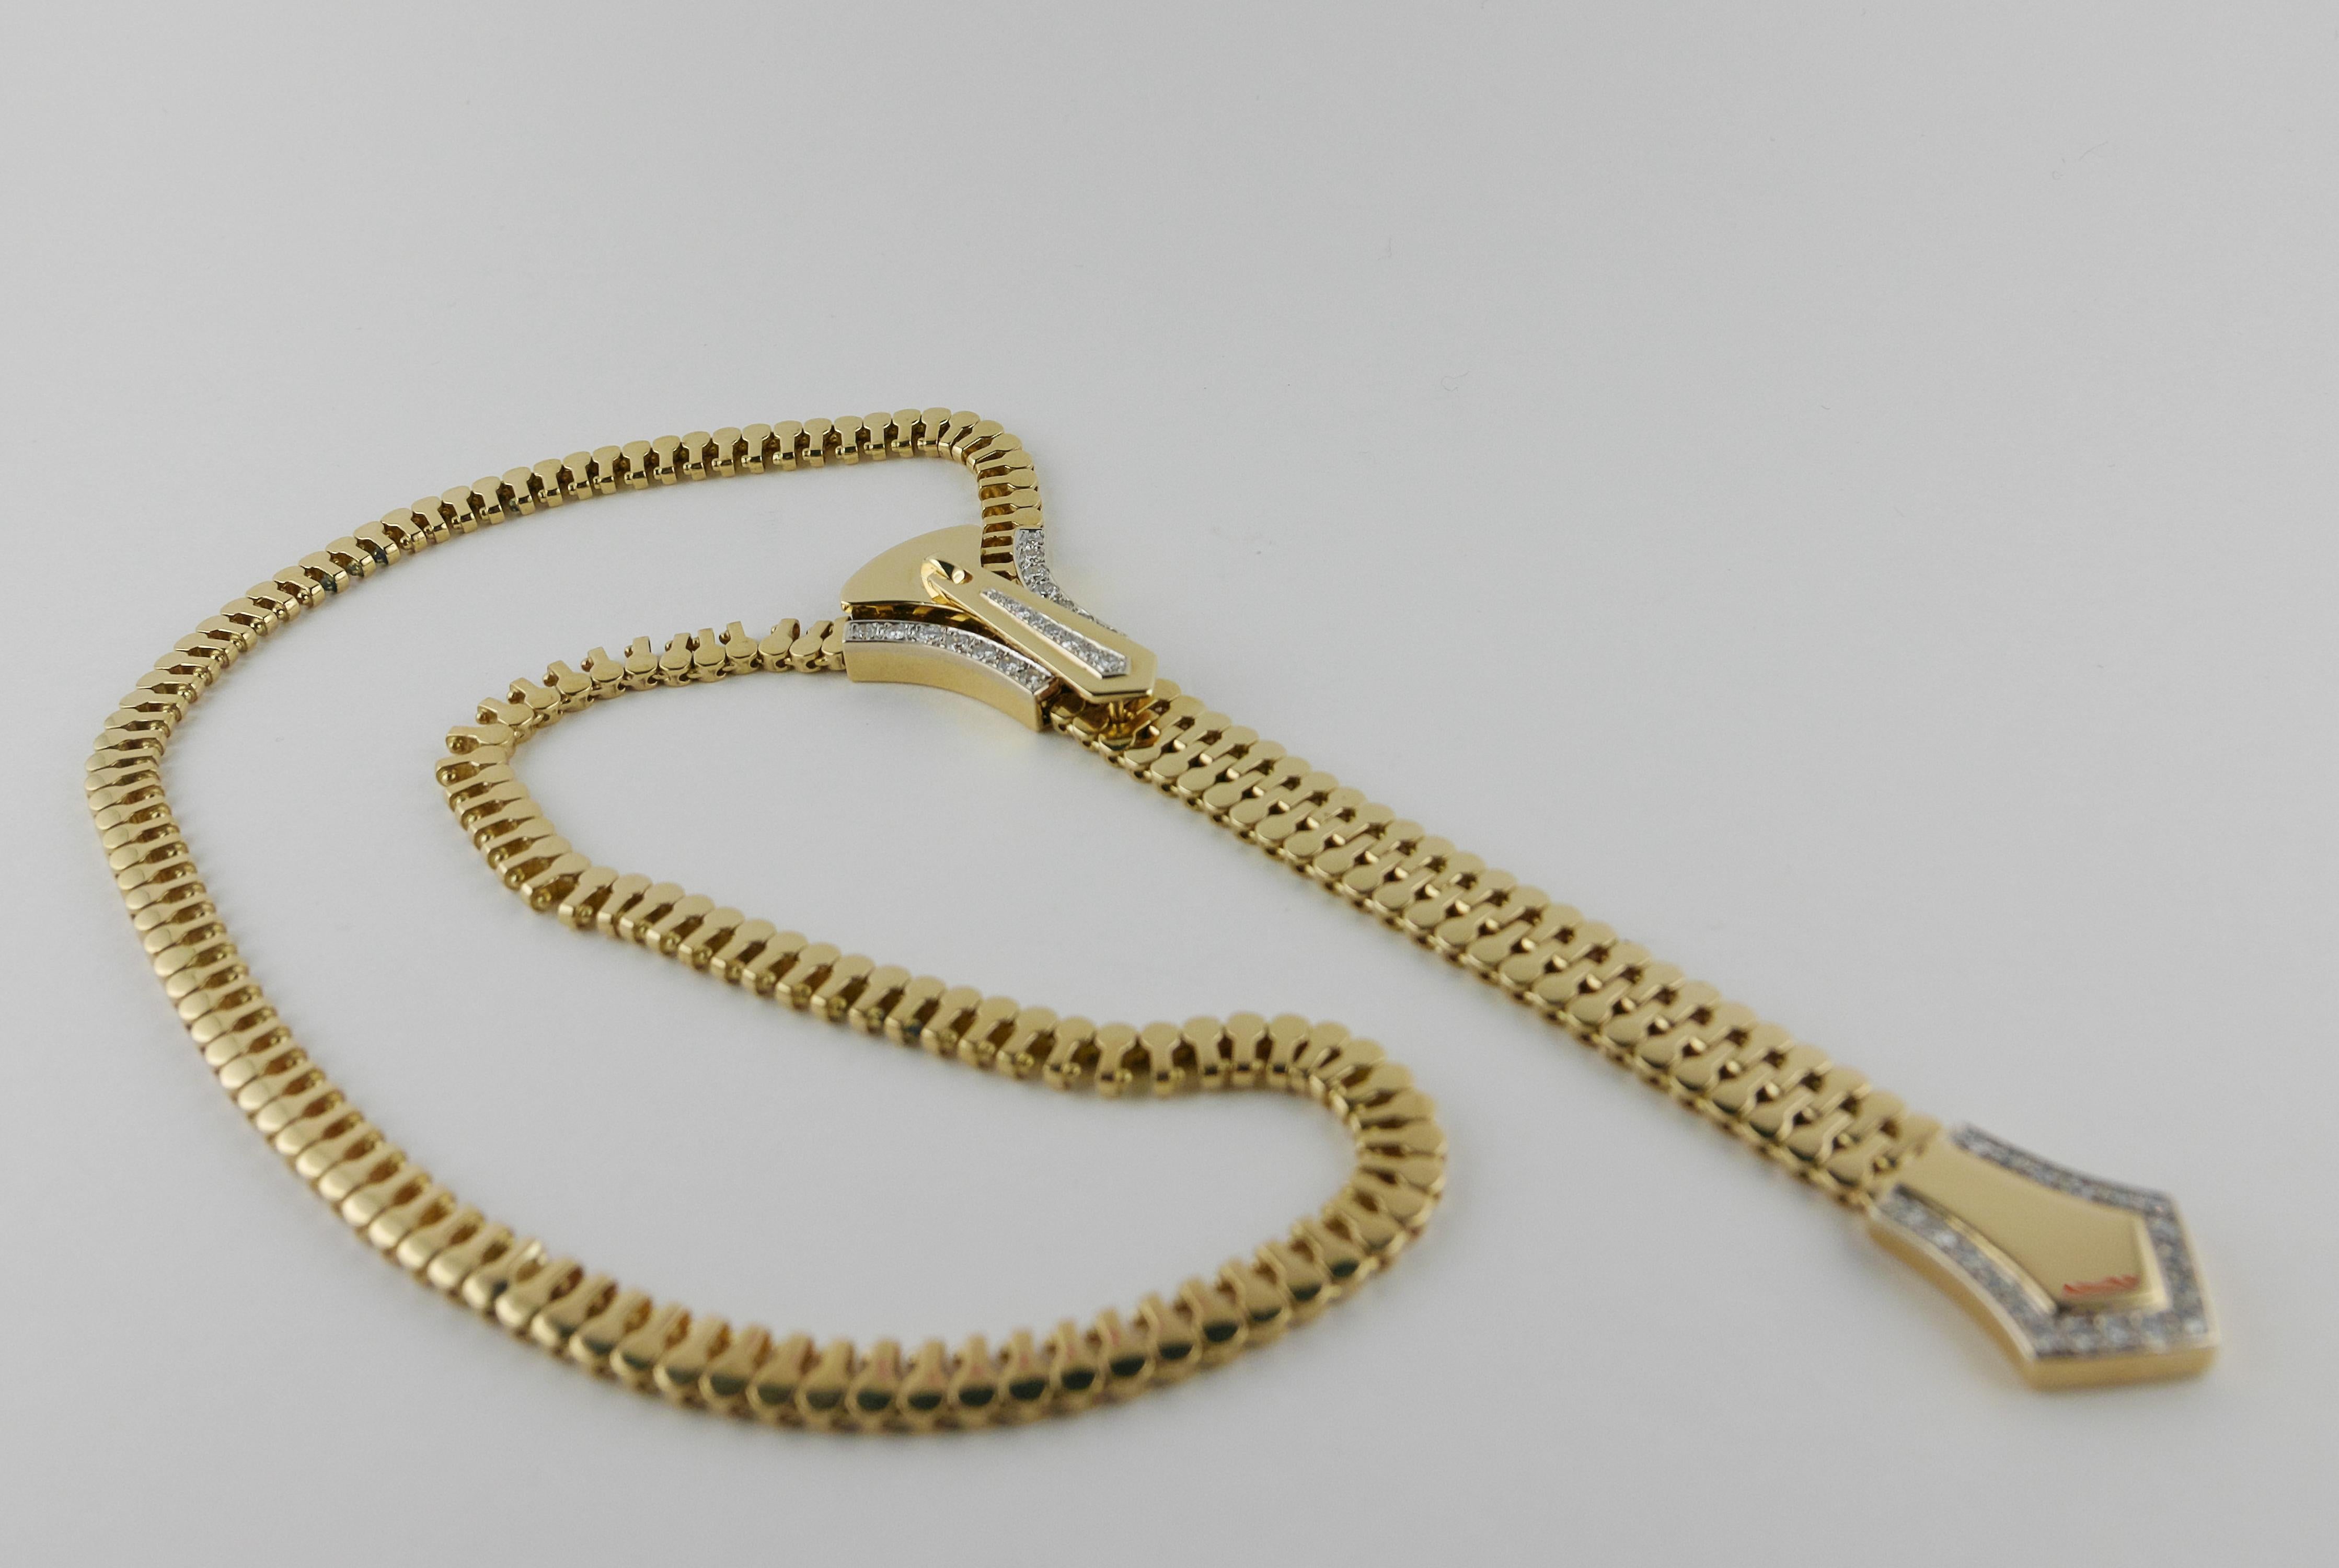 Diese italienische Halskette besteht aus einer Gliederkette aus 18 Karat Gelbgold und ist mit einem mit Diamanten besetzten Reißverschlussmotiv versehen, das an der Kette auf- und abwärts läuft und an jeder gewünschten Stelle befestigt werden kann.